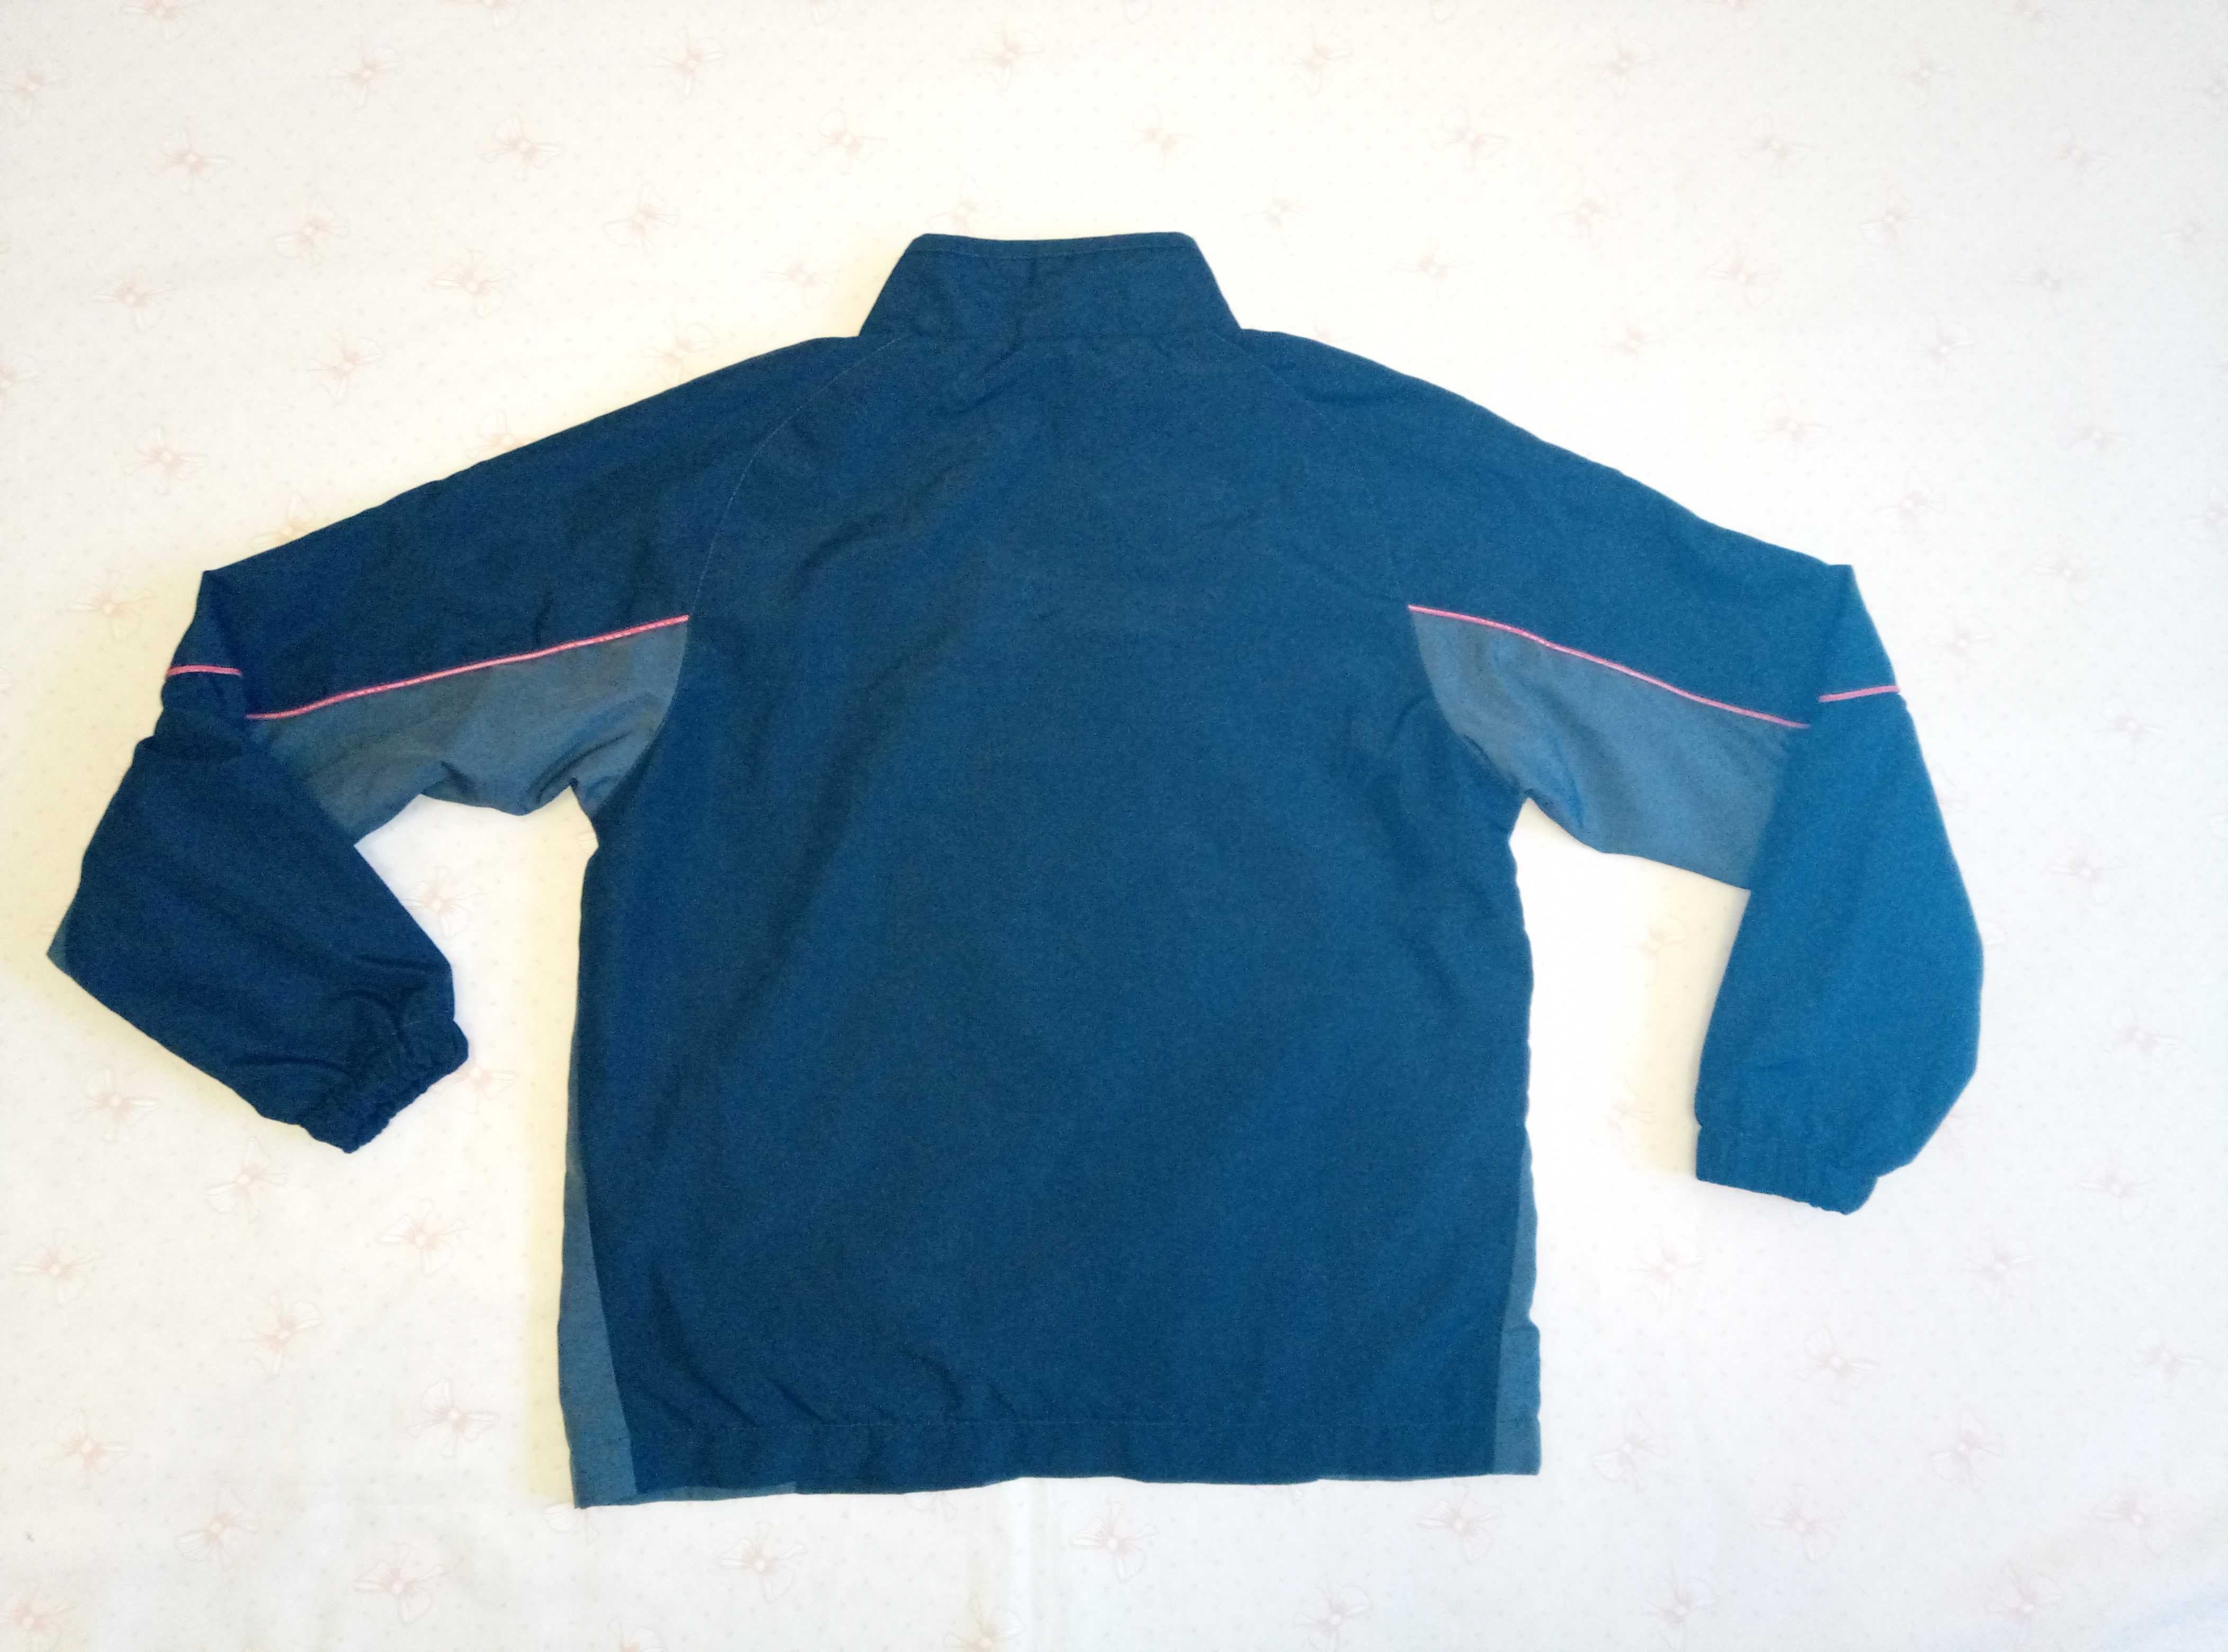 Курточка-Ветровка фирмы Umbro для мальчика 11 лет рост 146см